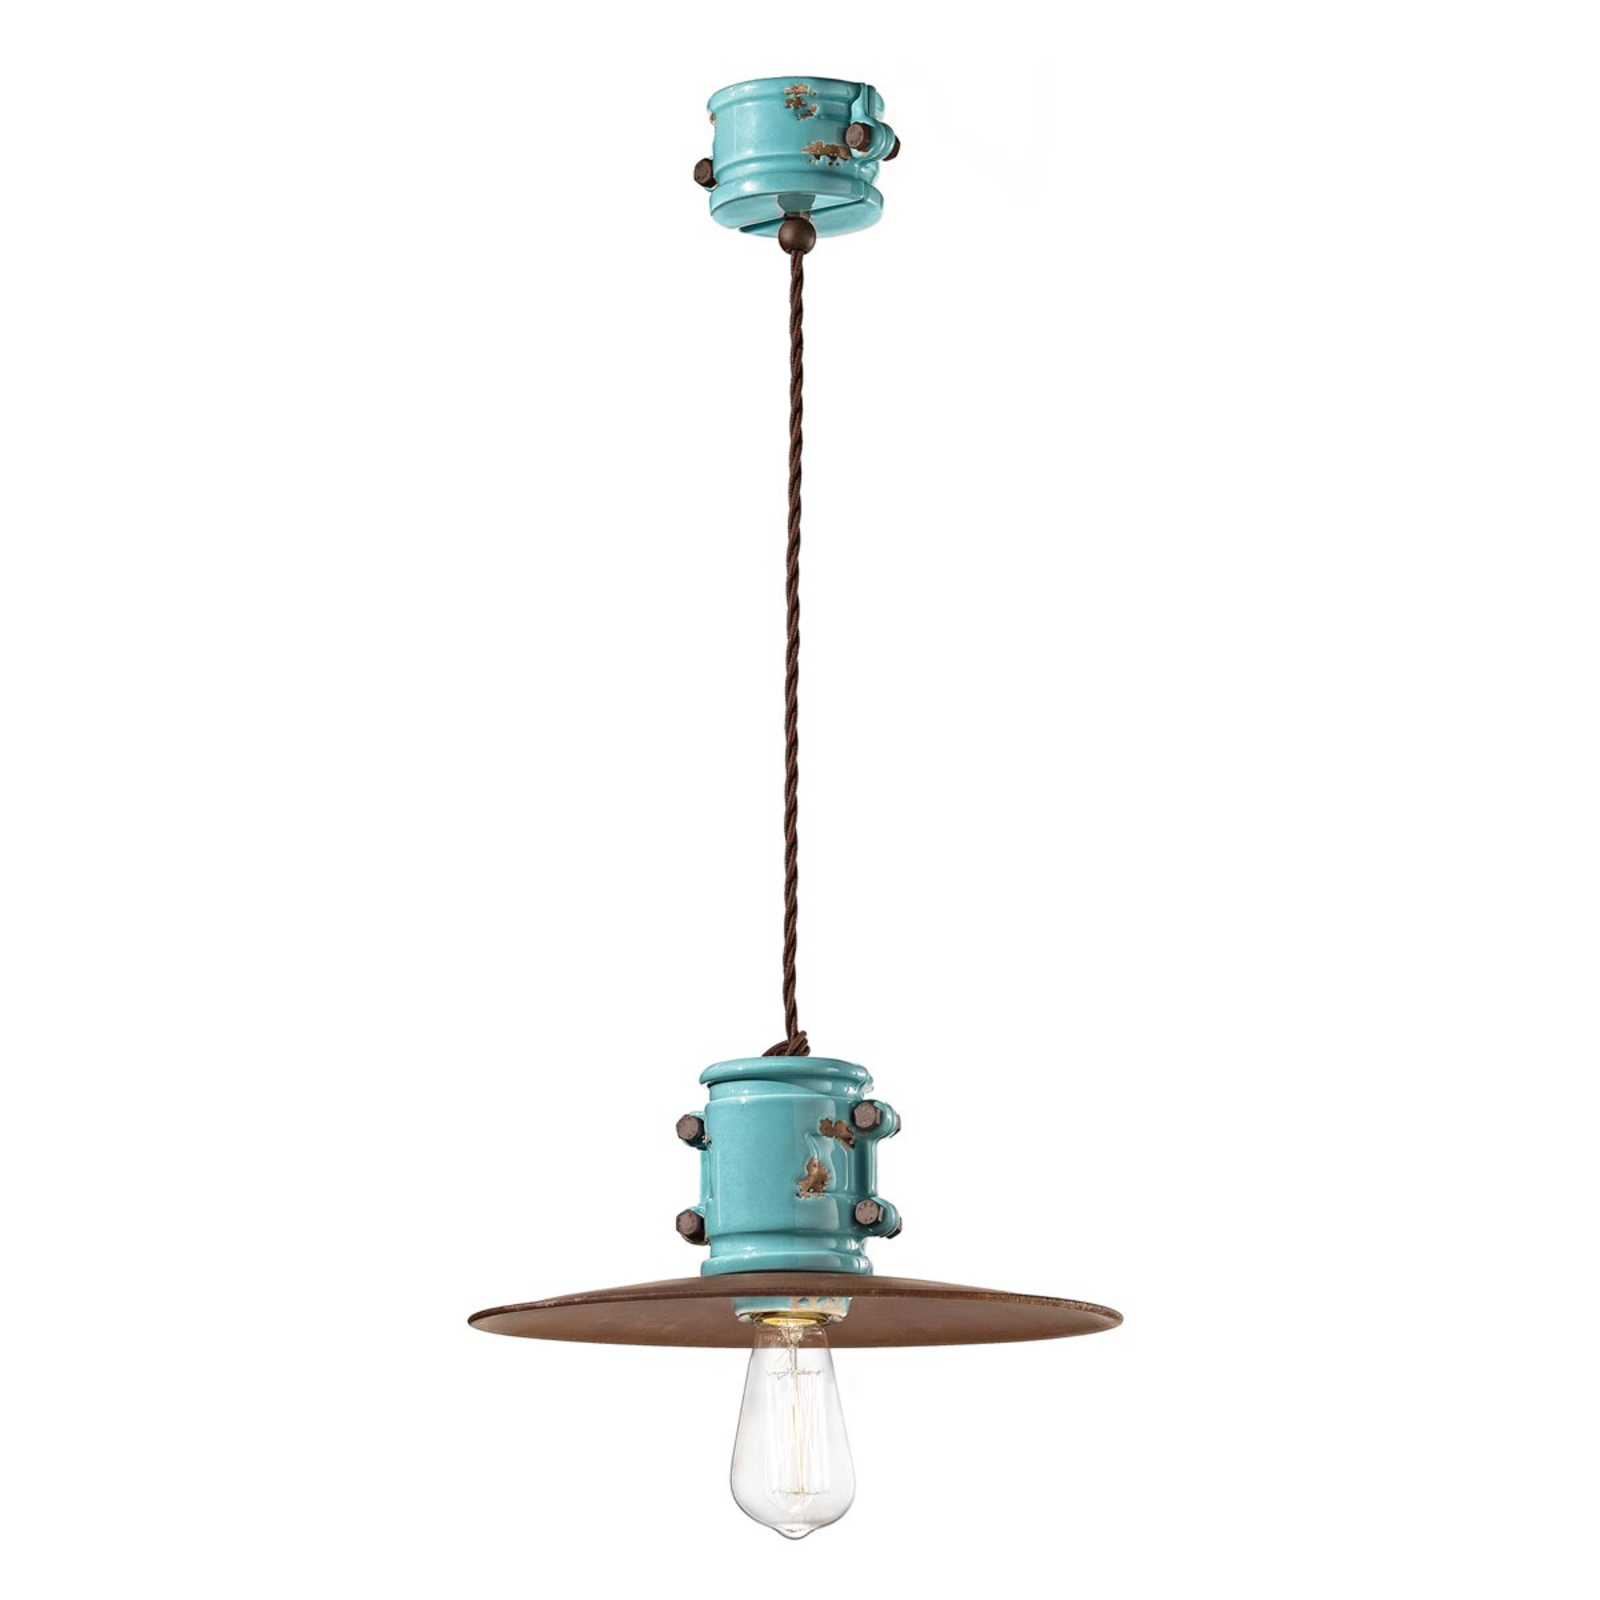 Lampa wisząca Nicolo w stylu vintage w kolorze turkusowym